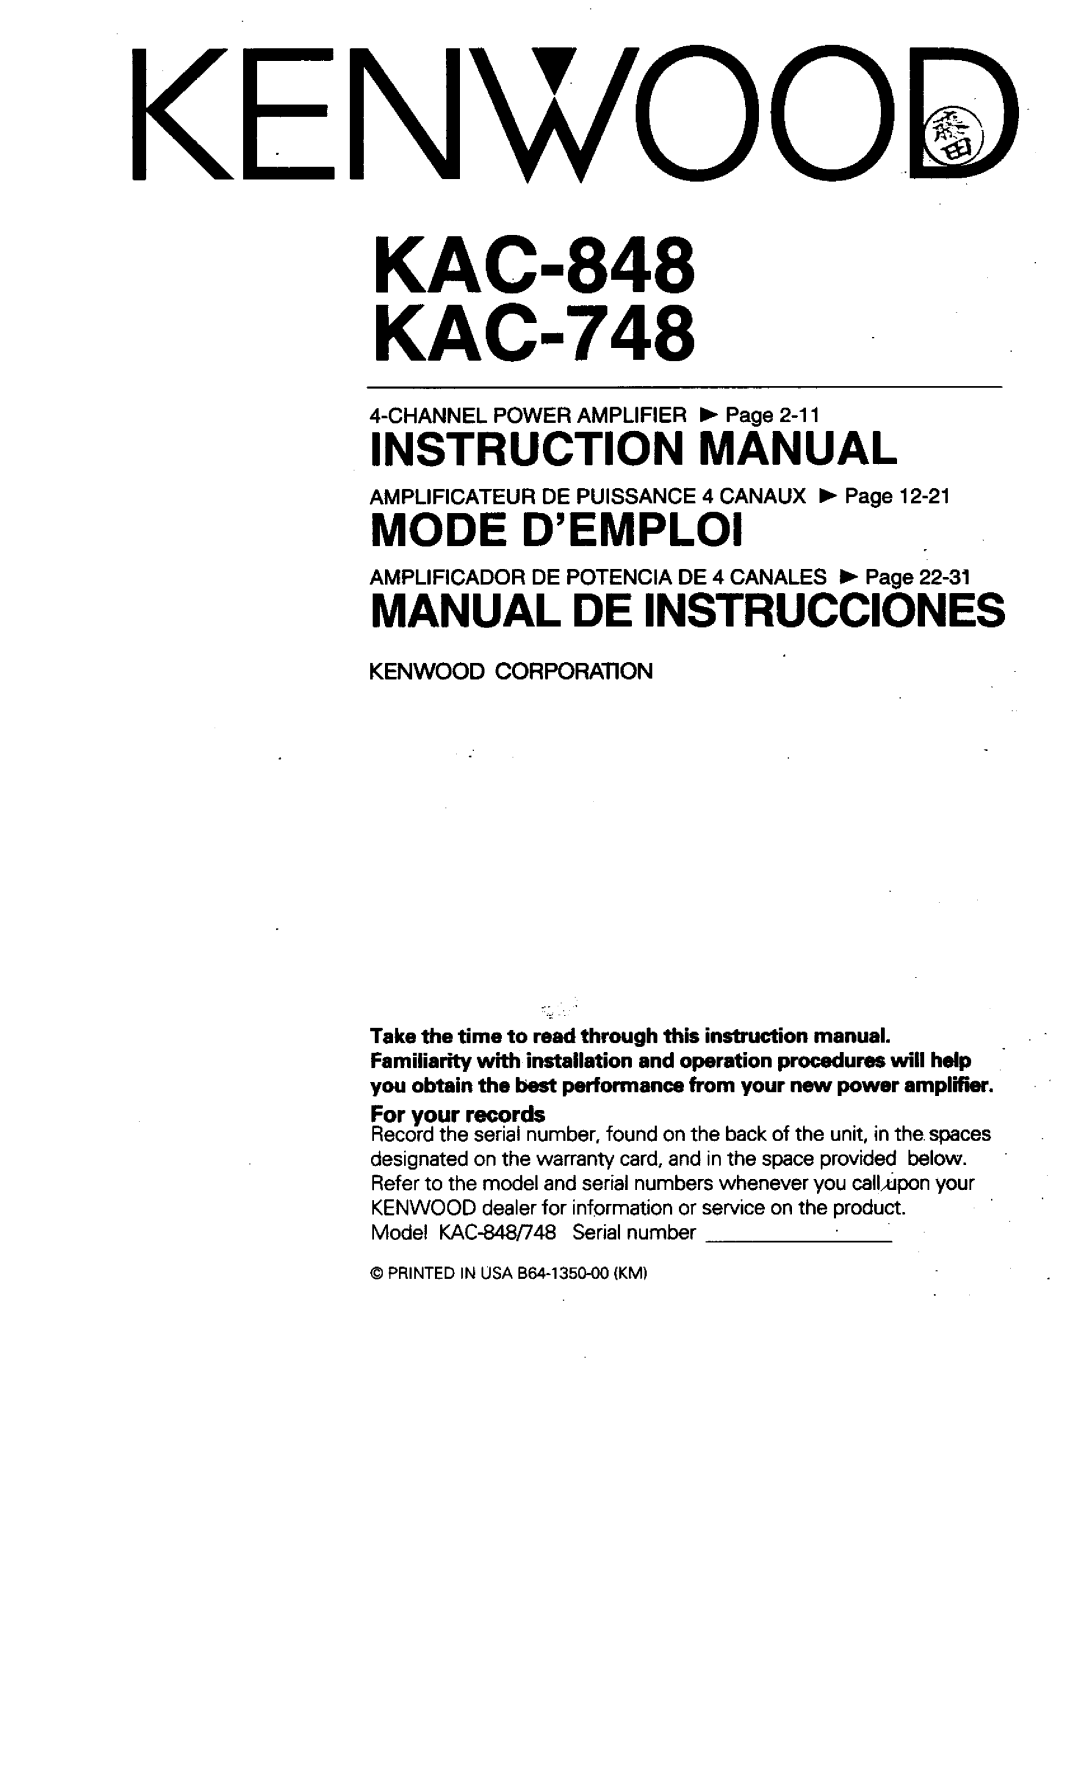 Kenwood KAC-748 manual 